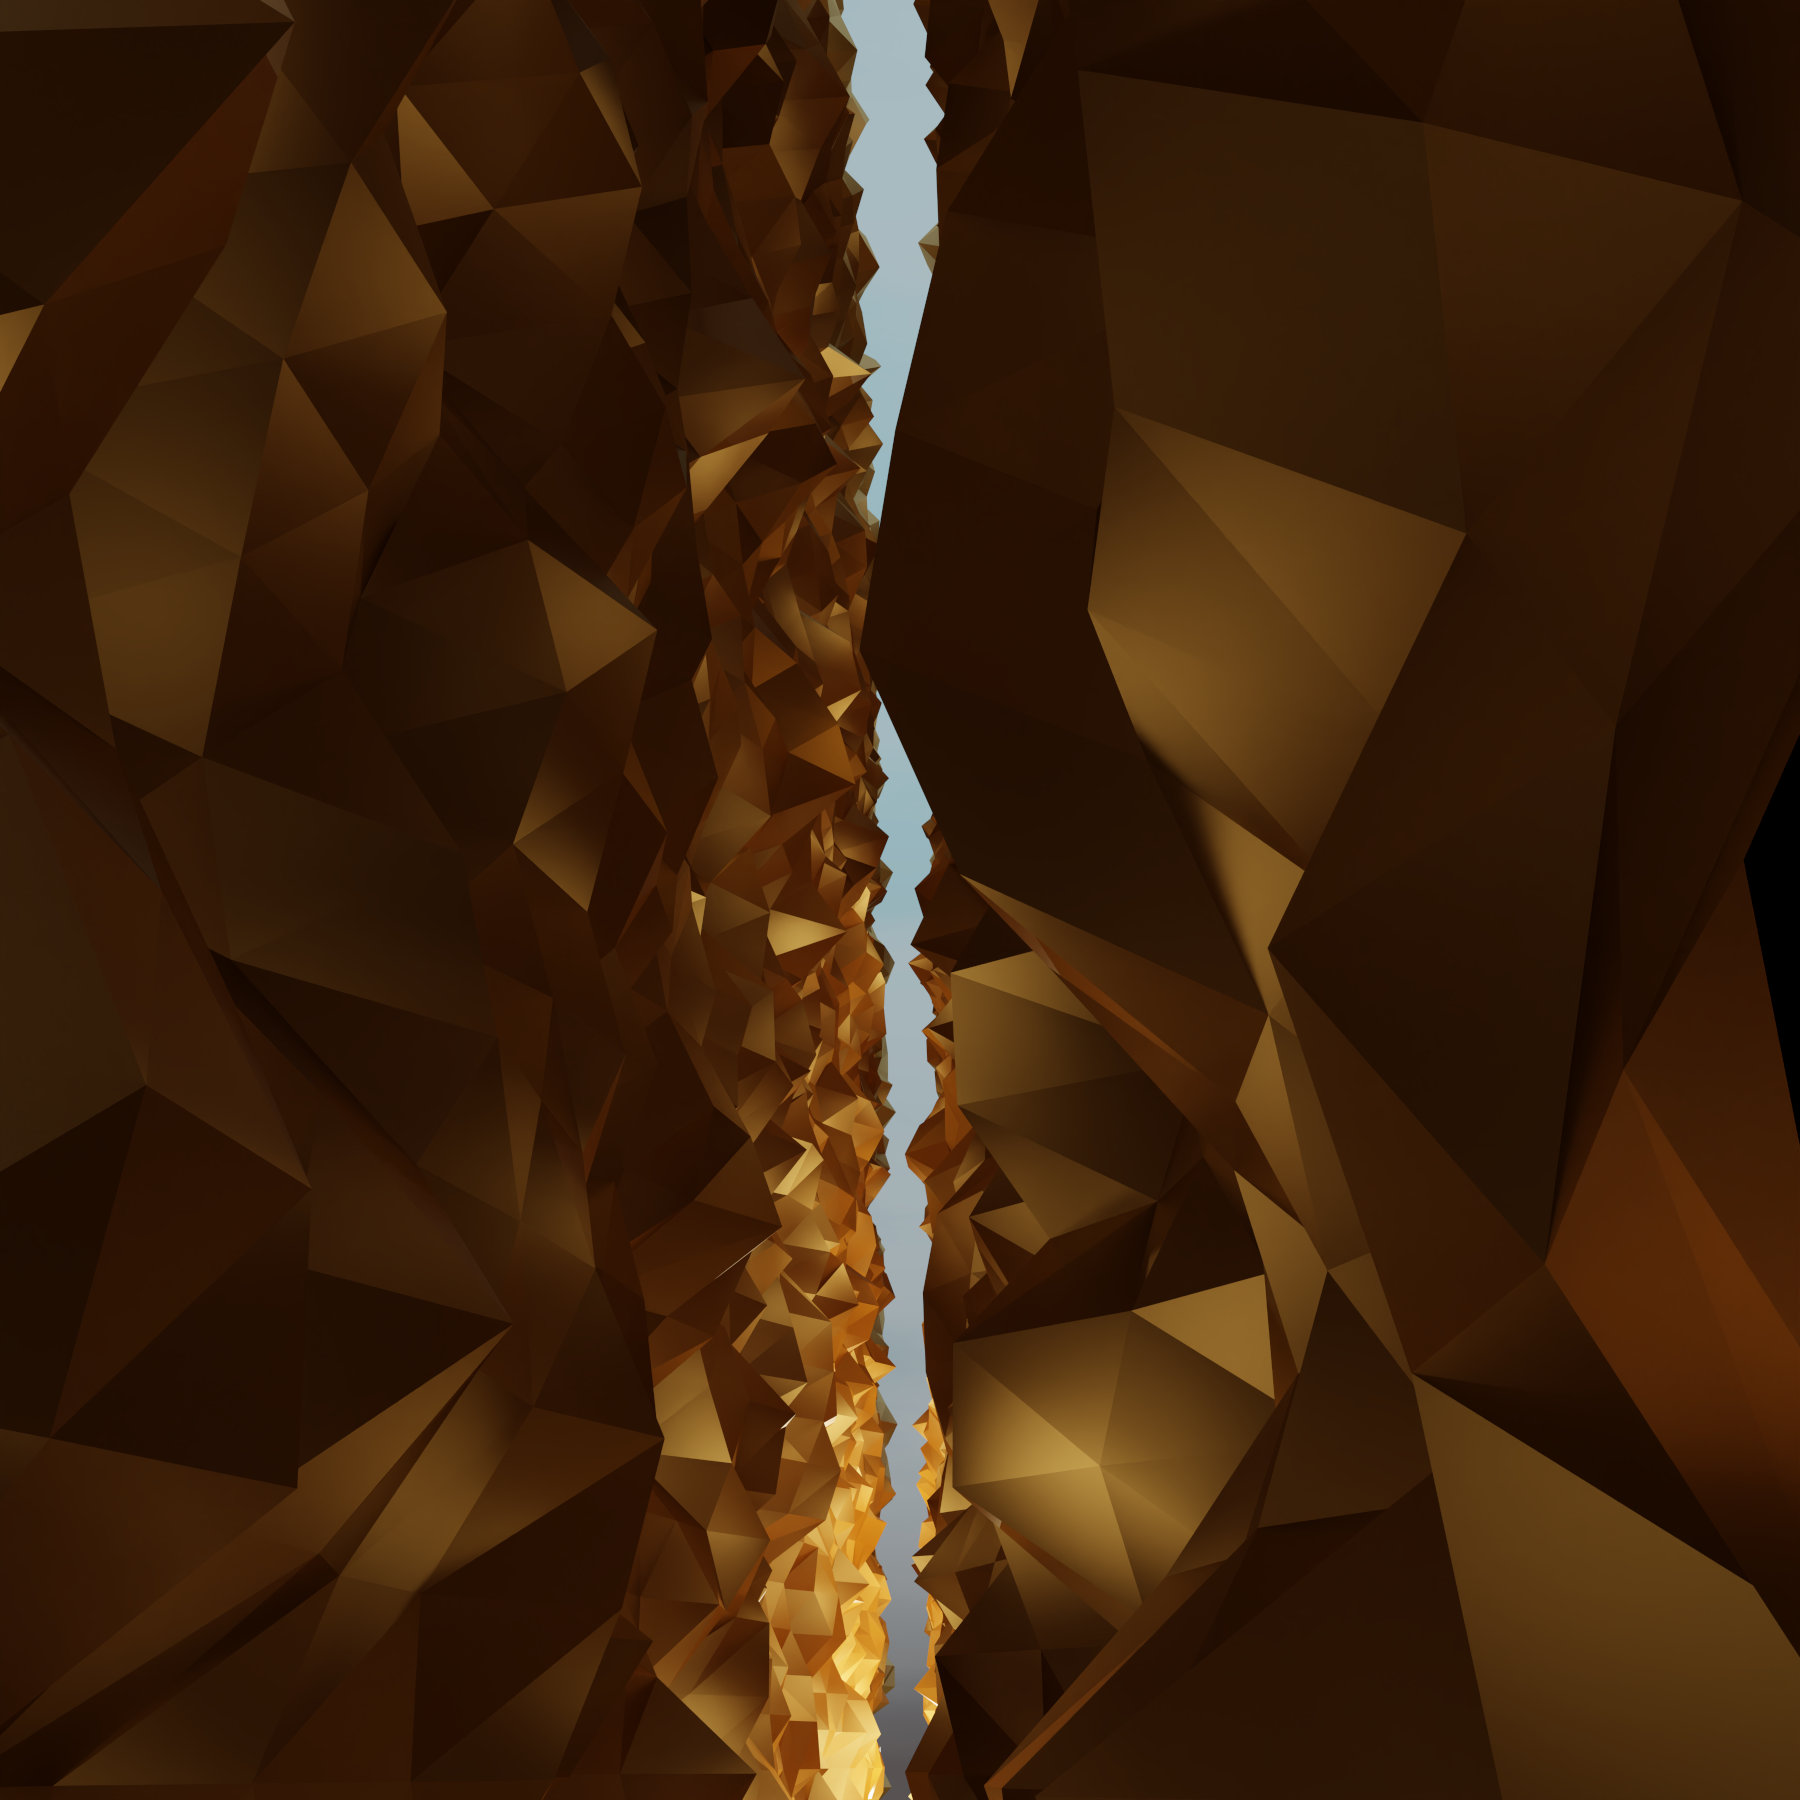 Virtuelle abstrakte Szenerie, Abstrakte digitale Kunst, Raytracing, Computer-gerendertes Bild, 2022. Der Betrachter steht mitten in einem Spalt in einem aufgebrochenen golden Würfel und sieht Licht am Ende des Spalts.